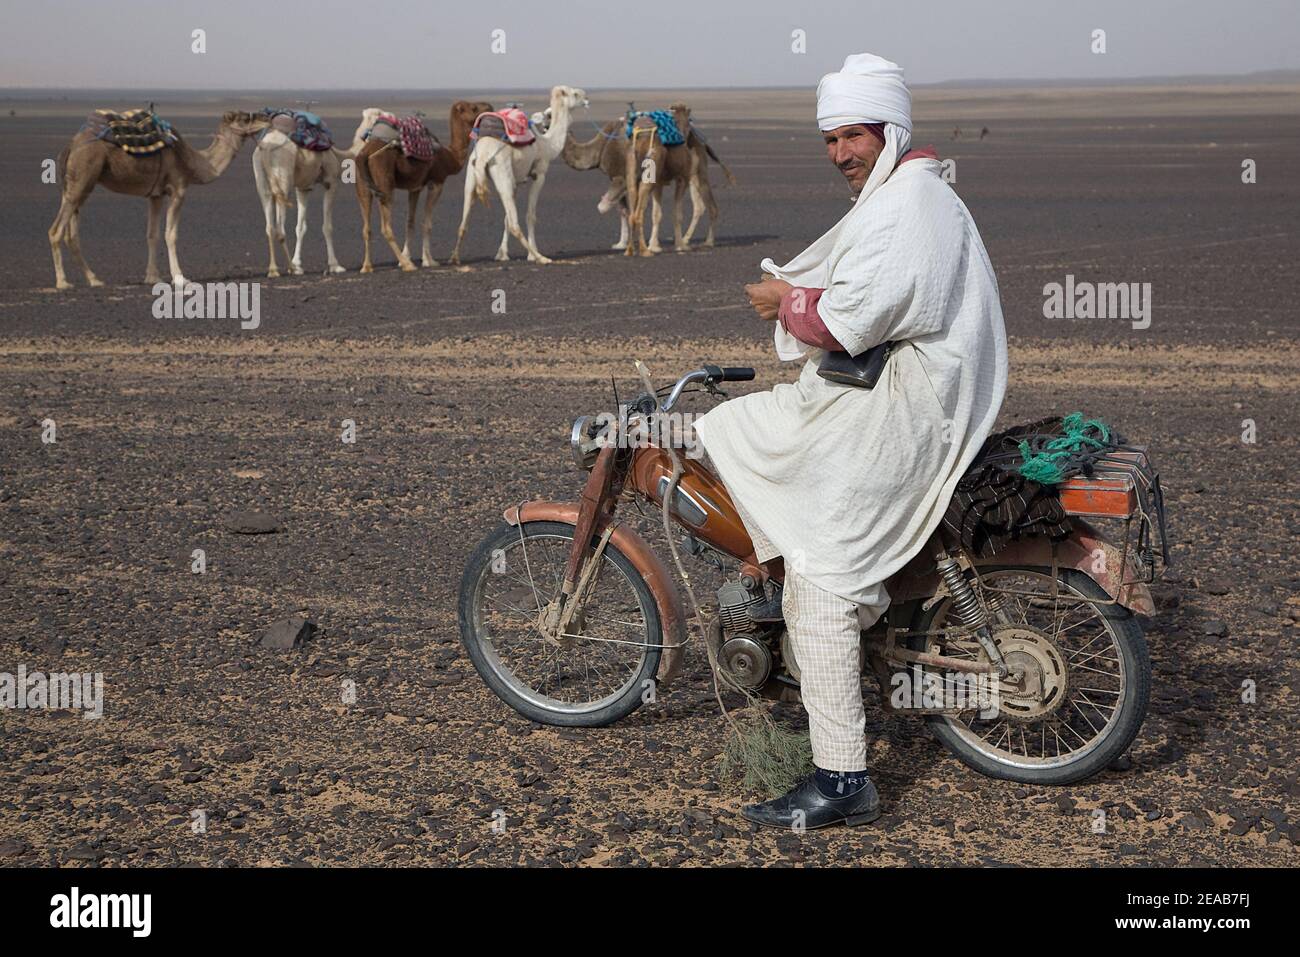 Moto et chameaux au Maroc Banque D'Images